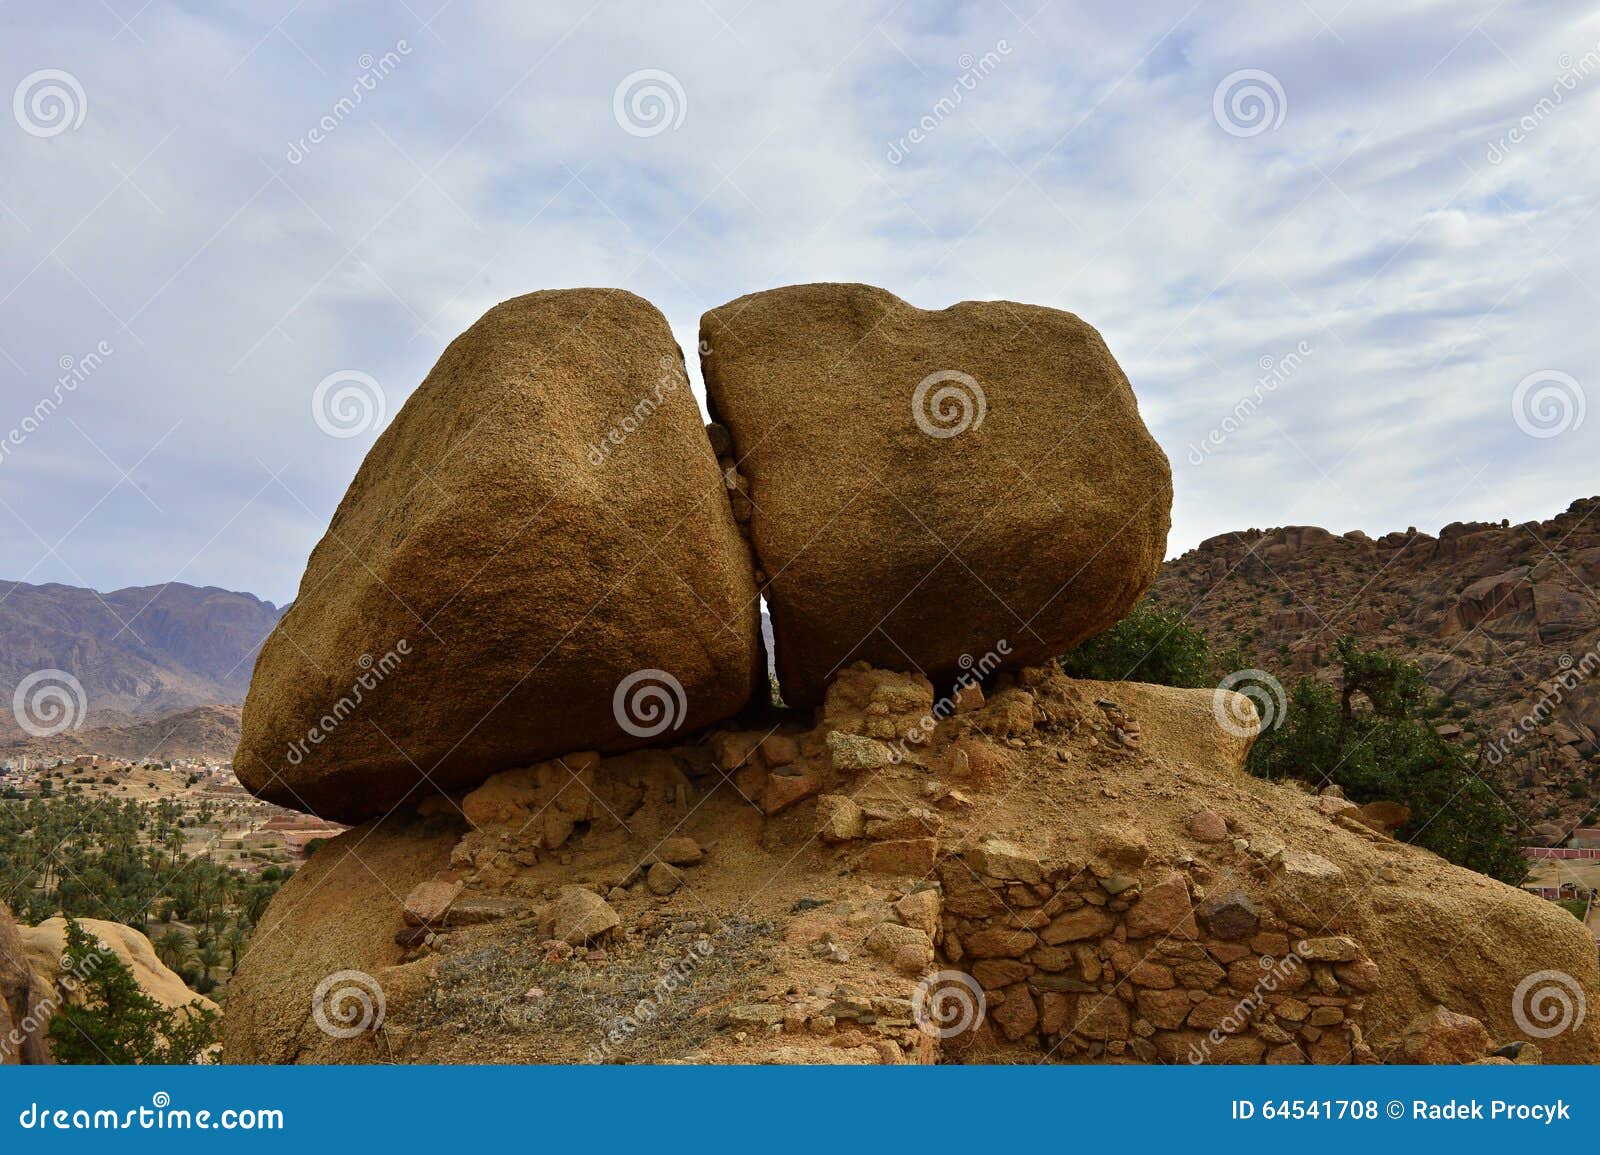 rocks in tafroute